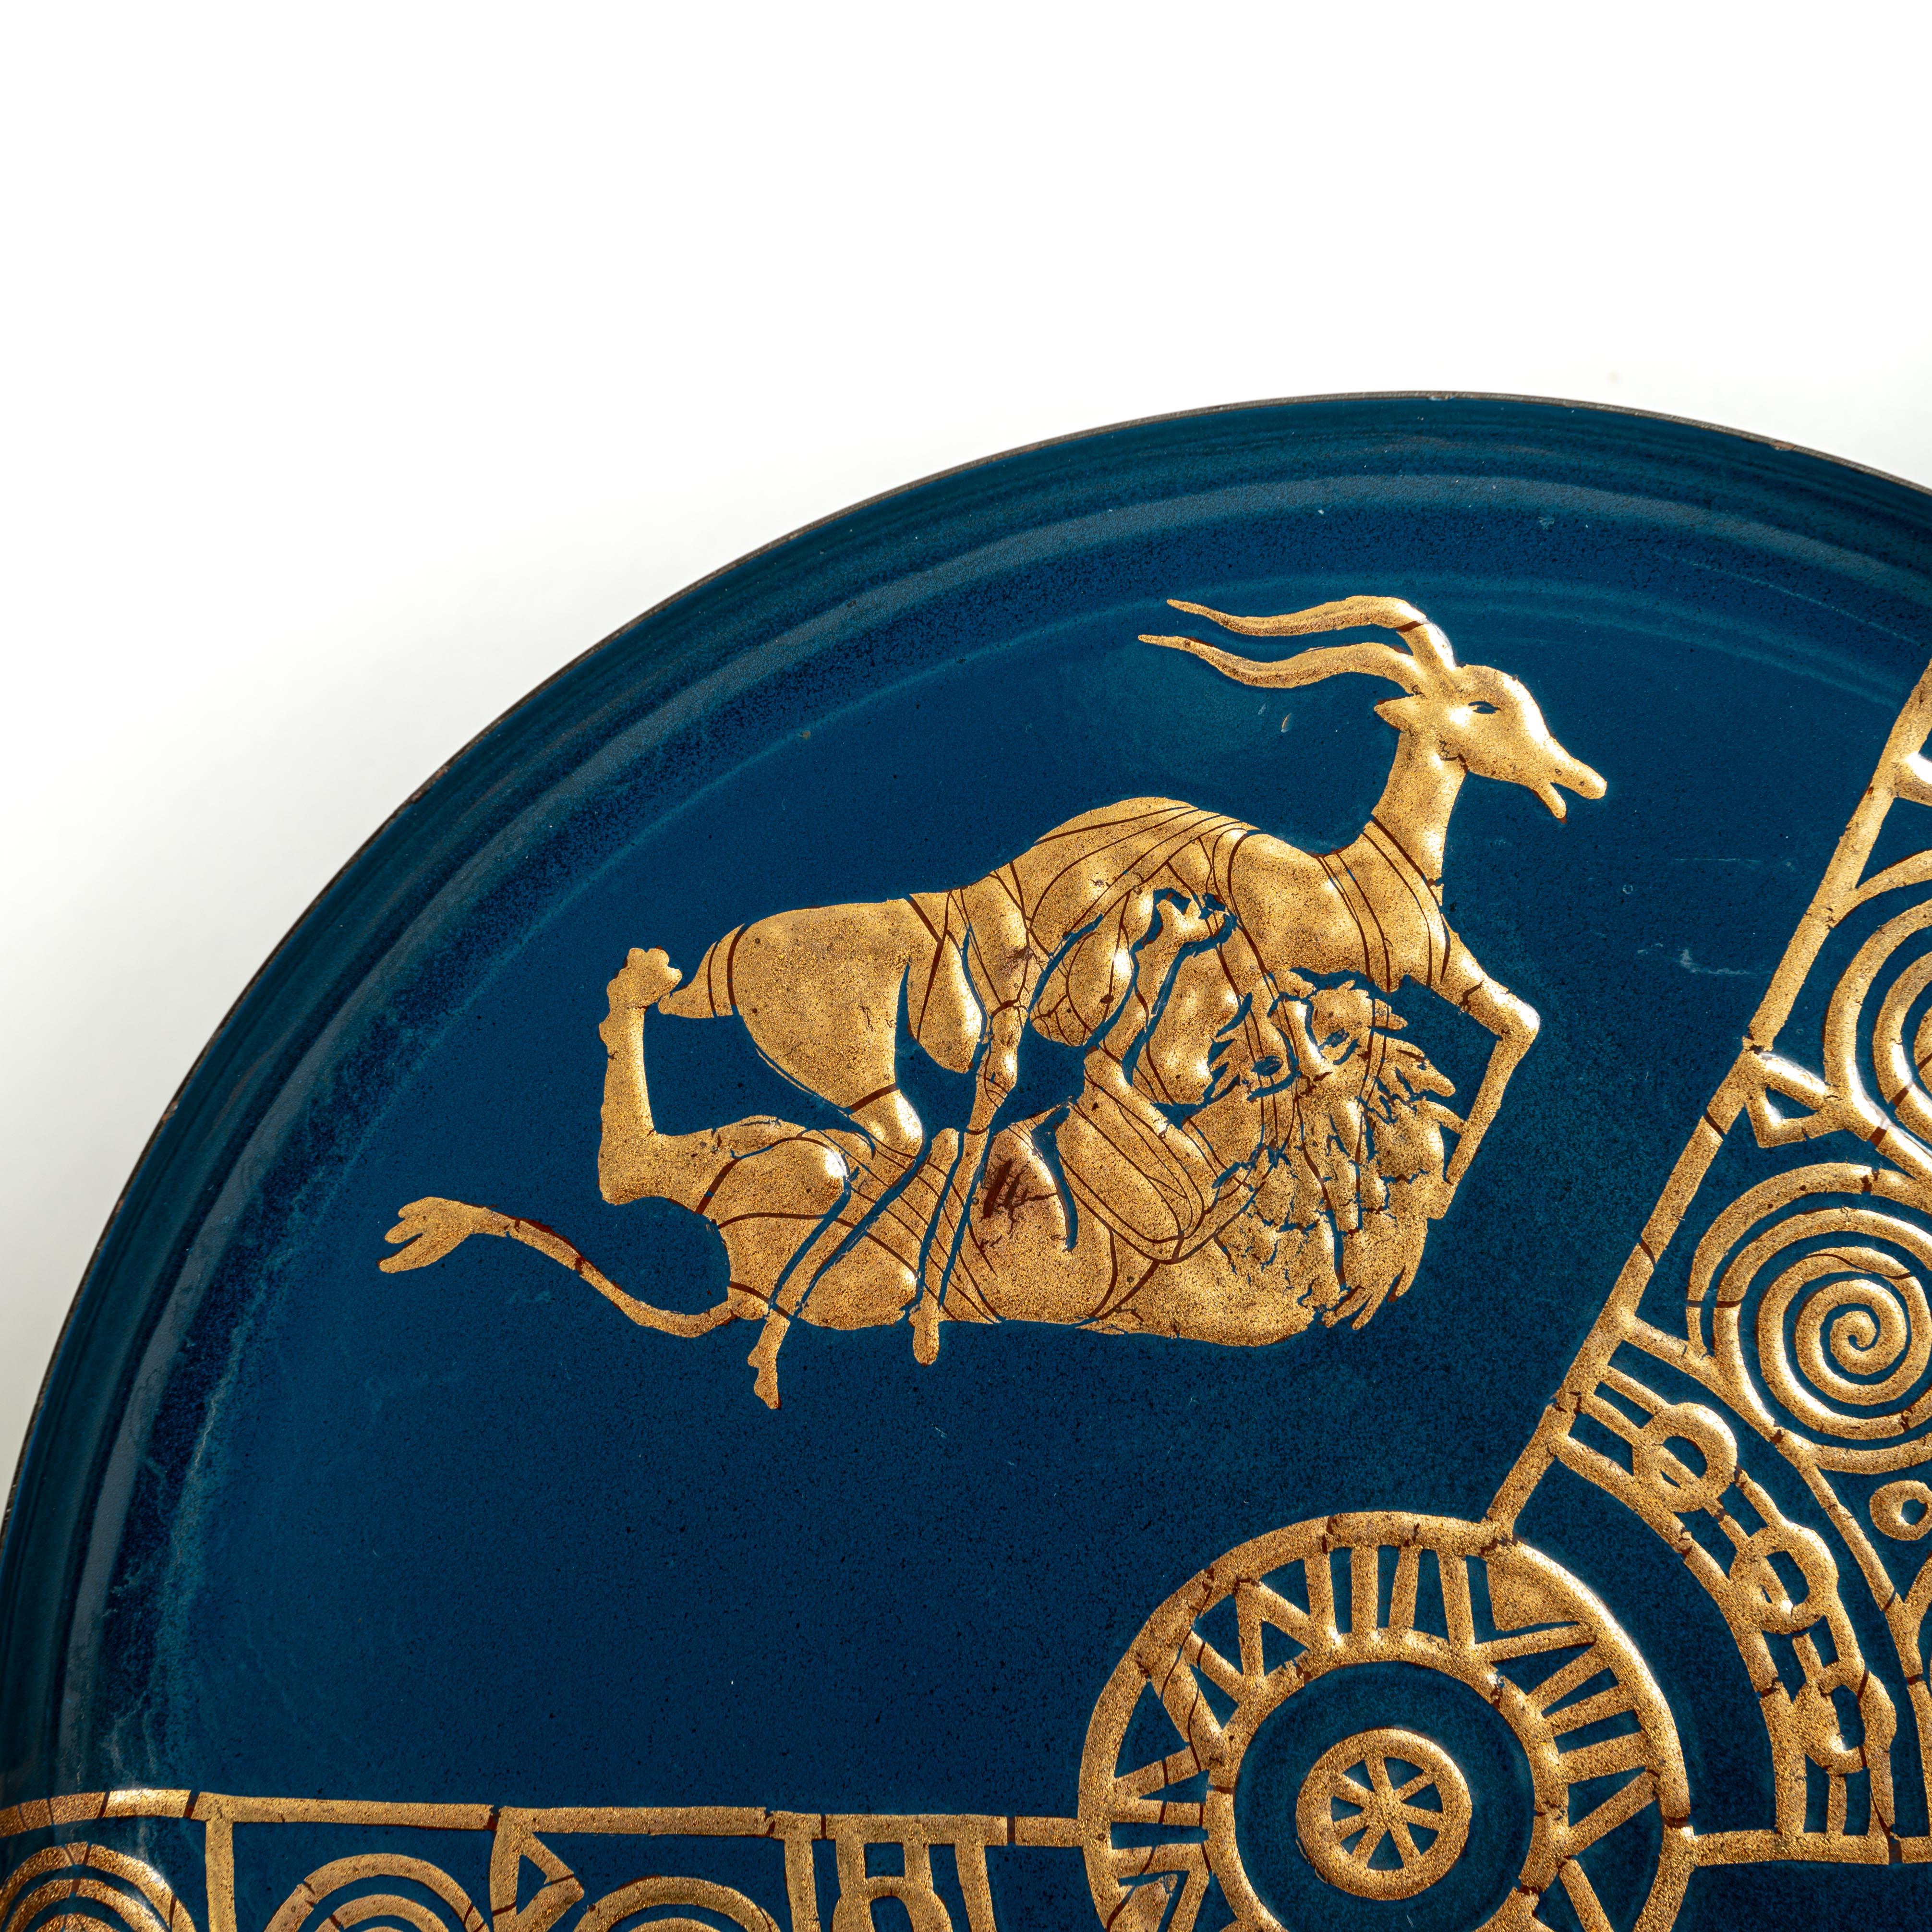 Plateau en métal extrêmement décoratif et rare des années 50 en Italie. 
La couleur de base bleu turquoise est ornée d'une représentation dorée du classicisme (stylisé) et d'éléments décoratifs. 
La scène de combat entre le lion et la gazelle est